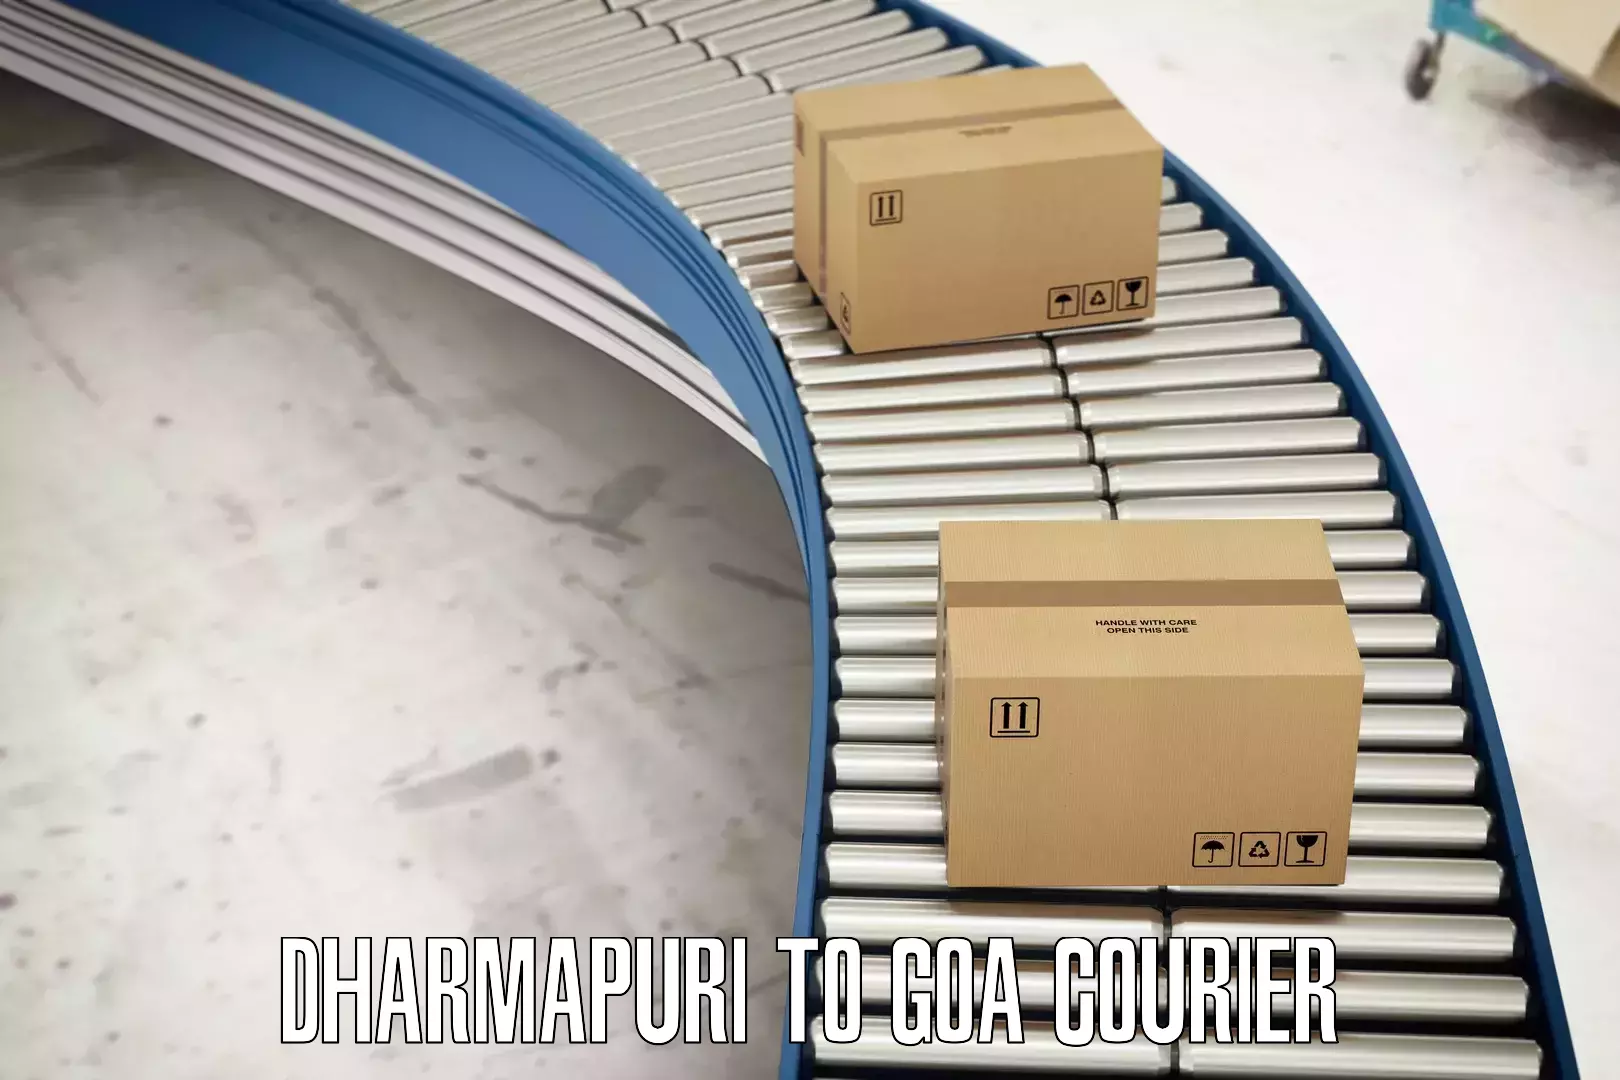 24/7 shipping services Dharmapuri to South Goa